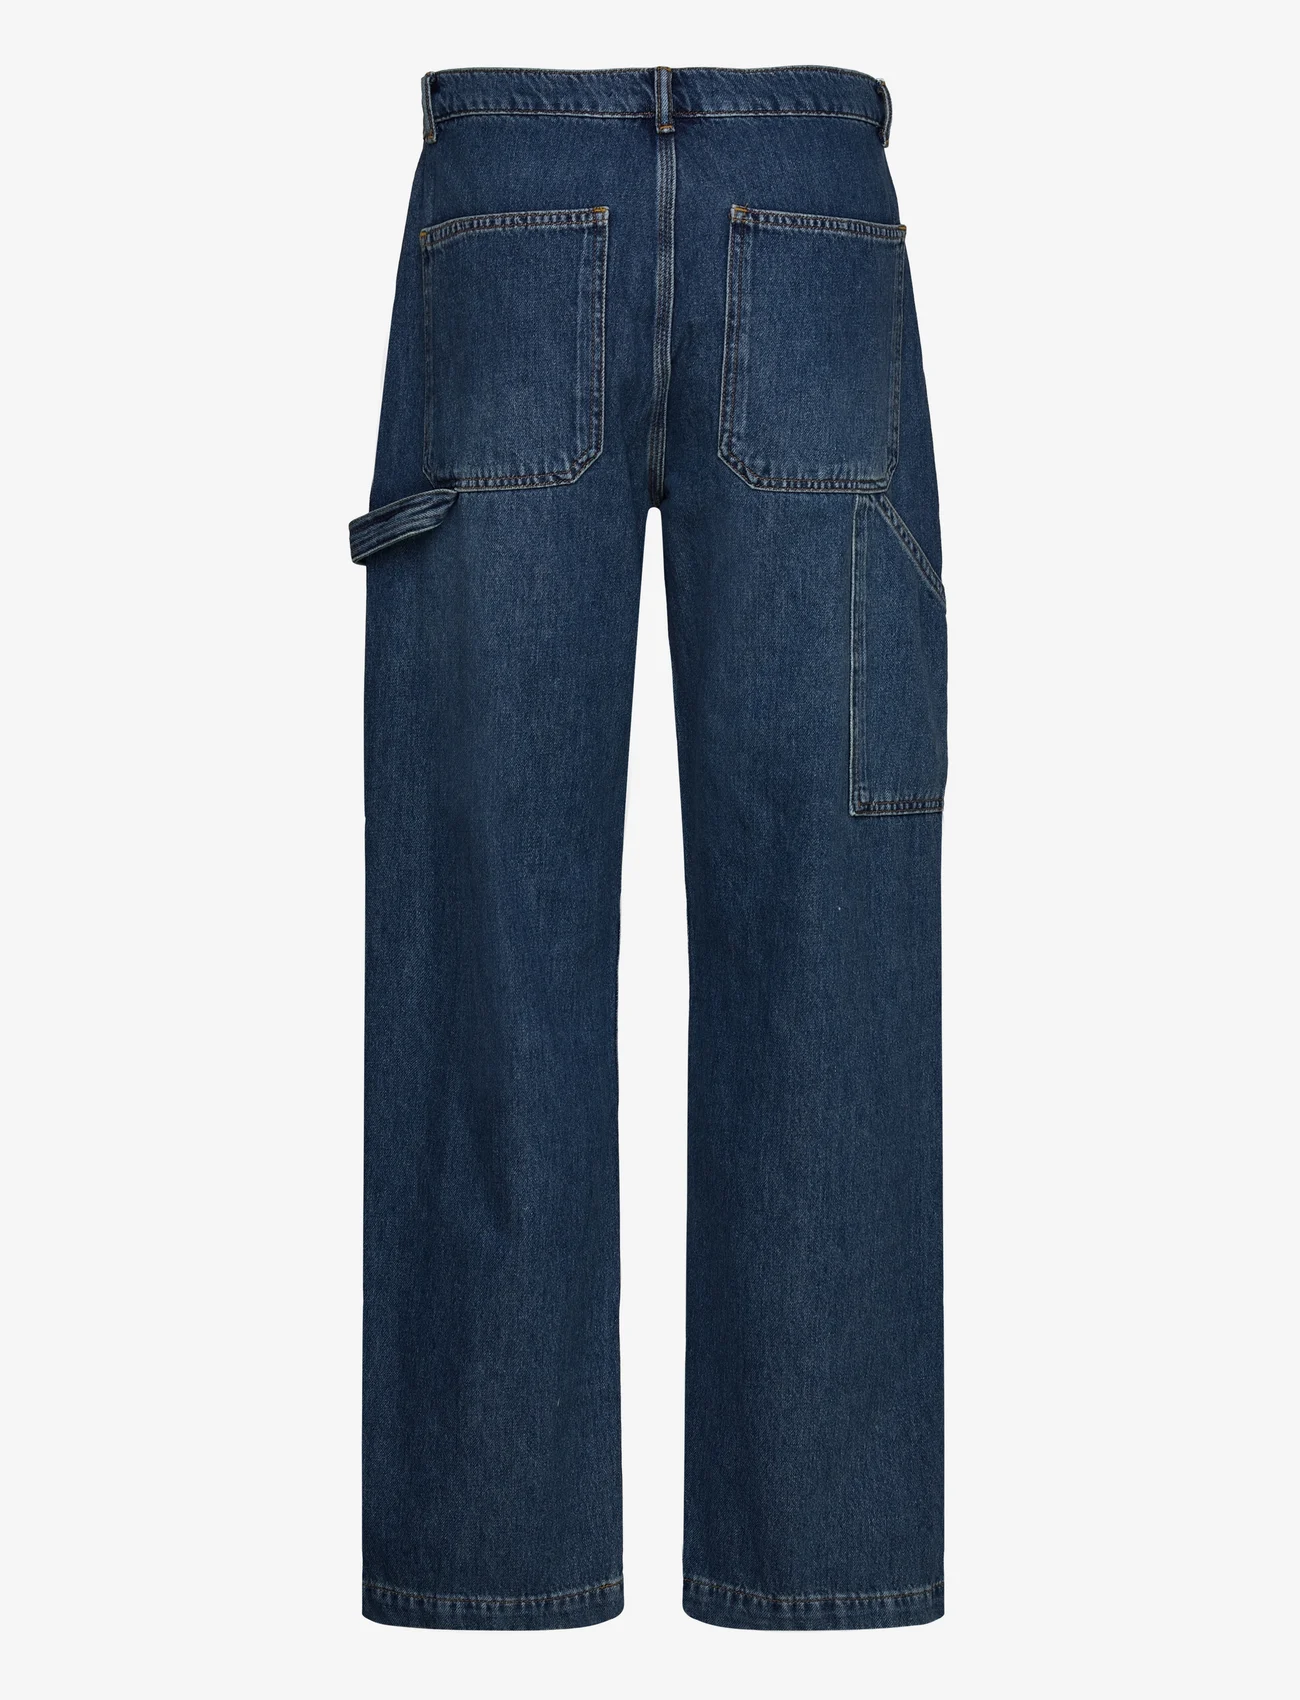 AllSaints - MIA CARPENTER JEAN - jeans met wijde pijpen - mid indigo - 1